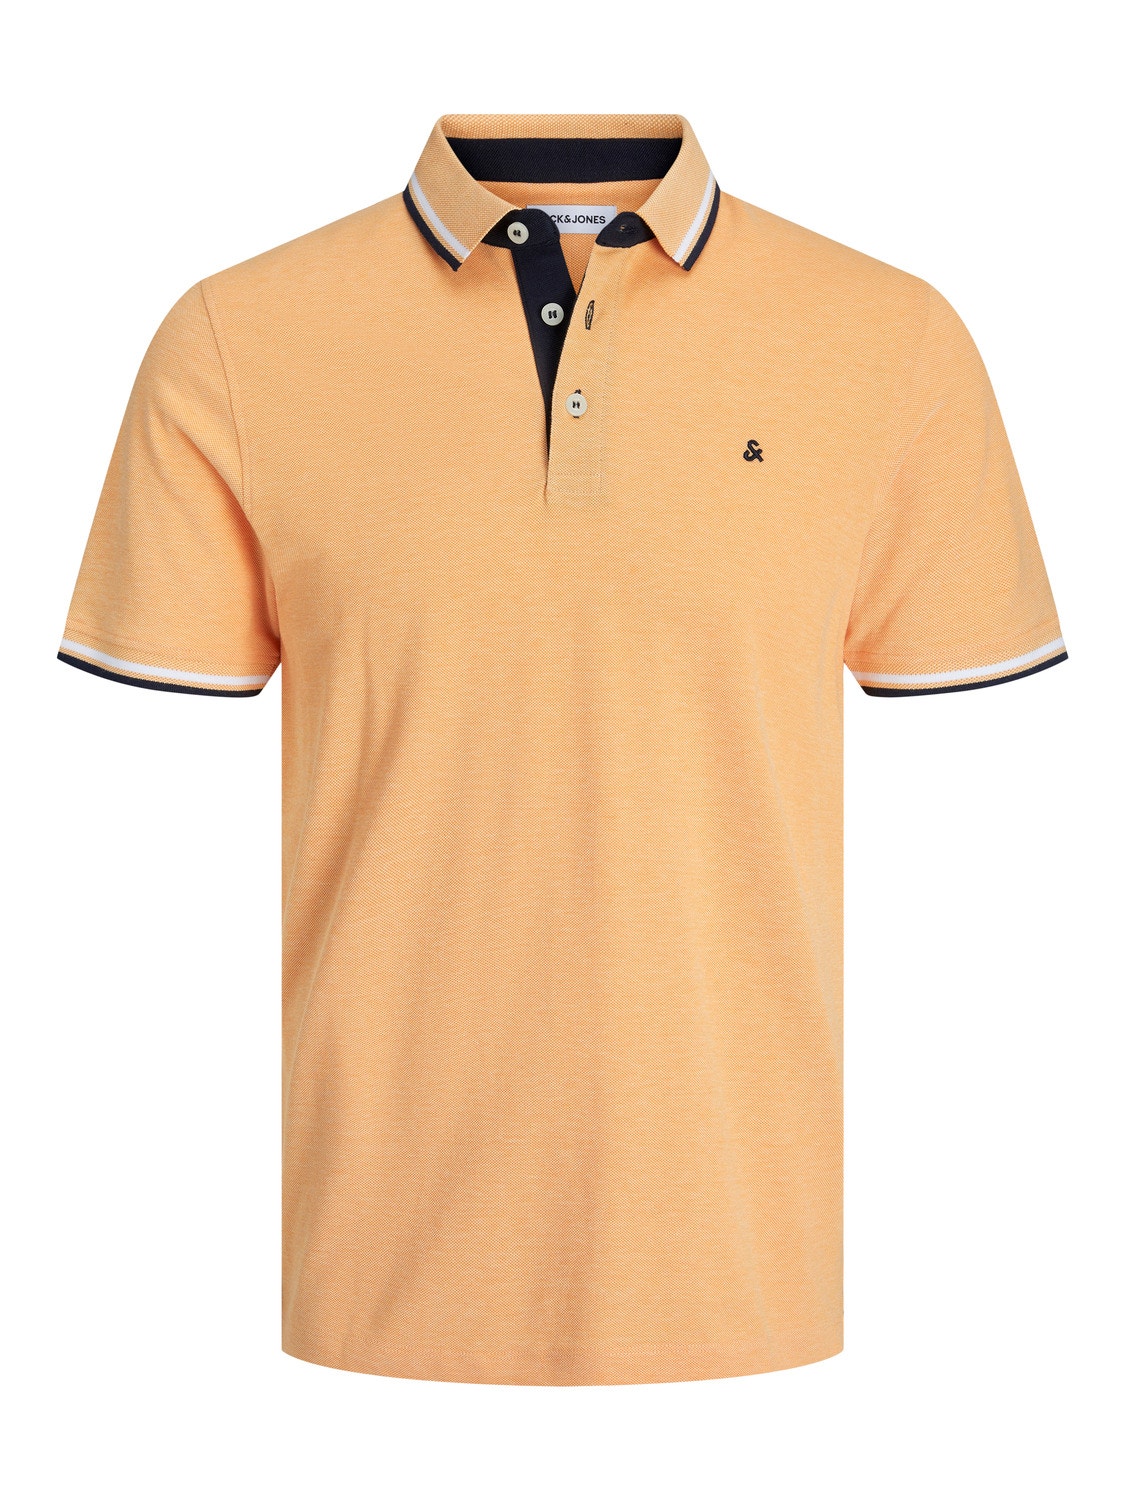 Jack & Jones Plain Polo T-shirt -Apricot Ice  - 12136668